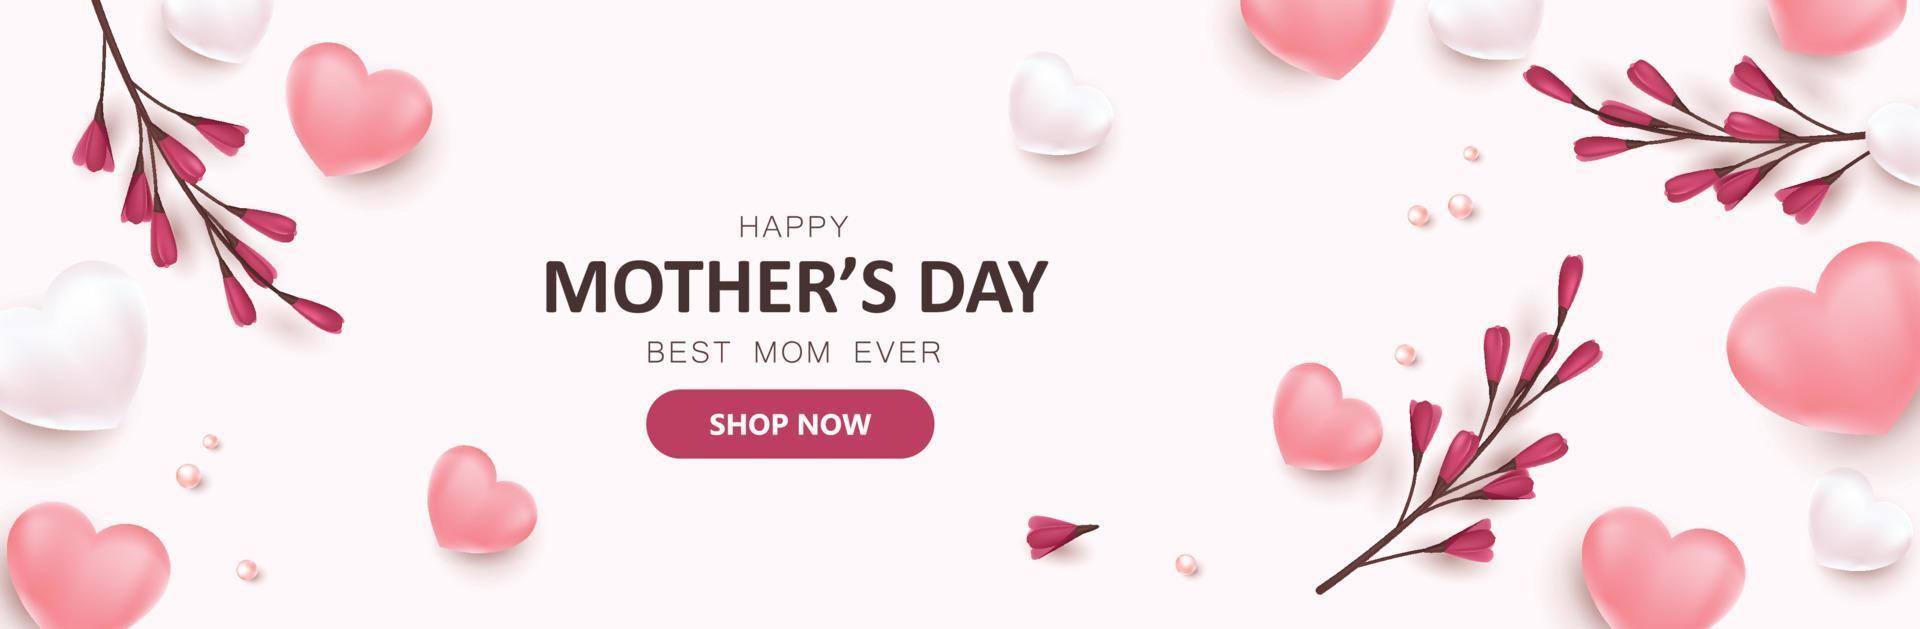 mise en page de fond de bannière de vente de promotion de la fête des mères avec des ballons et des fleurs en forme de coeur vecteur